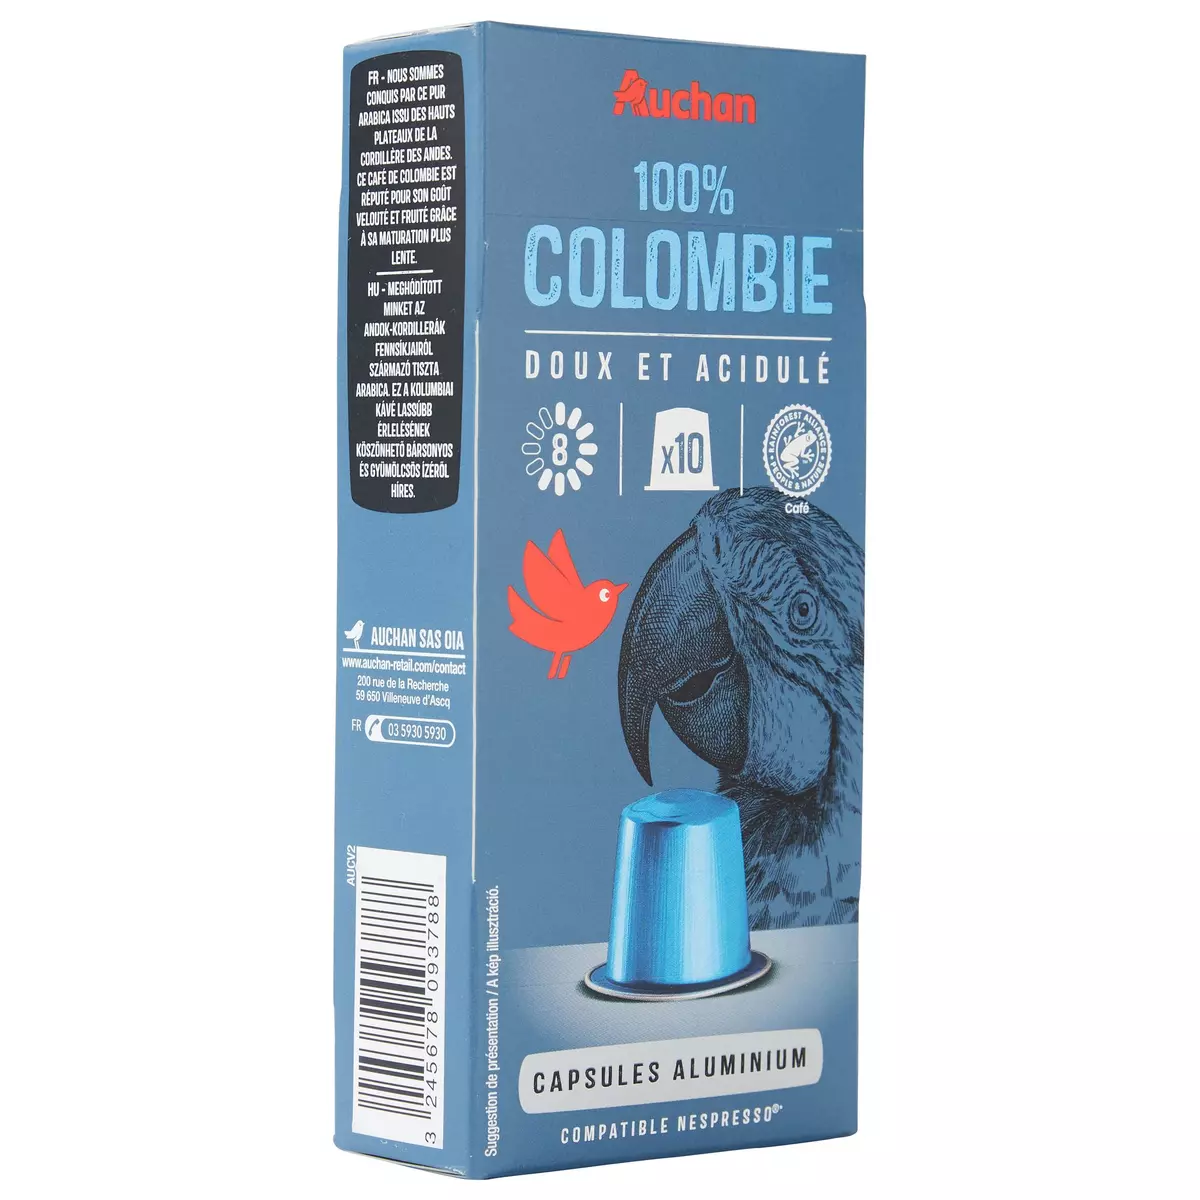 AUCHAN GOURMET Capsule de café % Colombie intensité 8 compatible Nespresso 10 capsules 52g